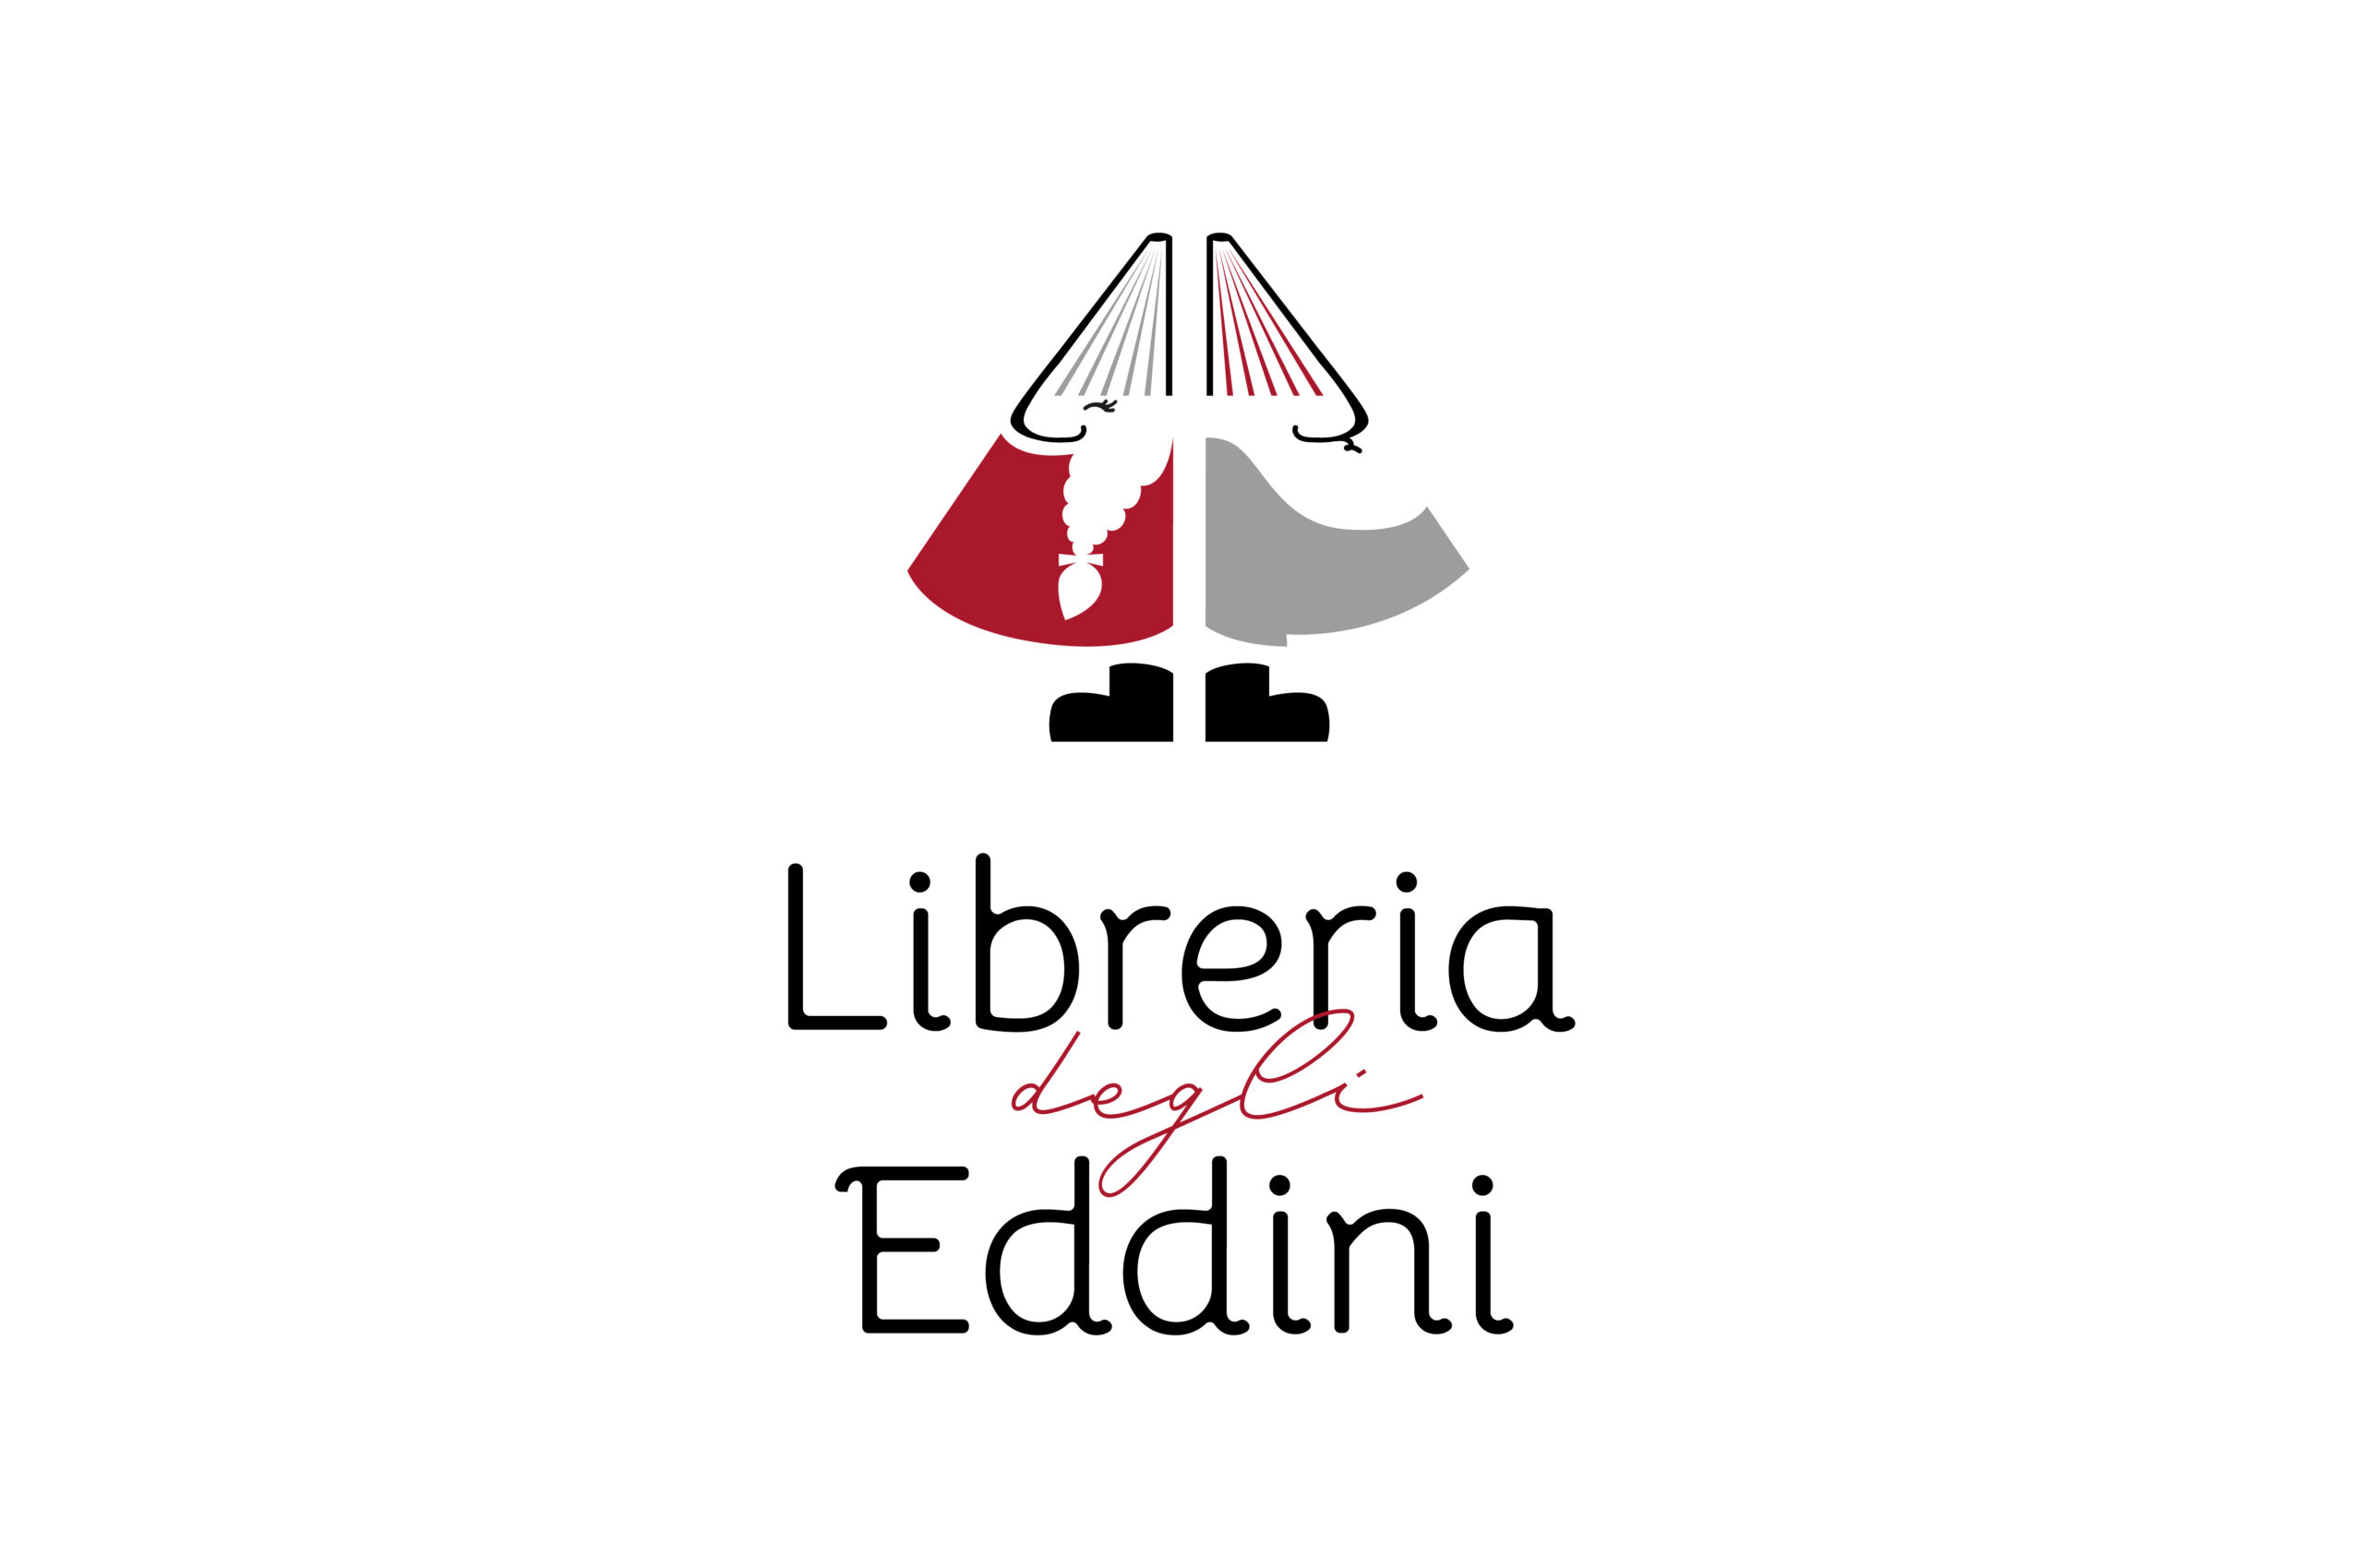 libreria-degli-eddini